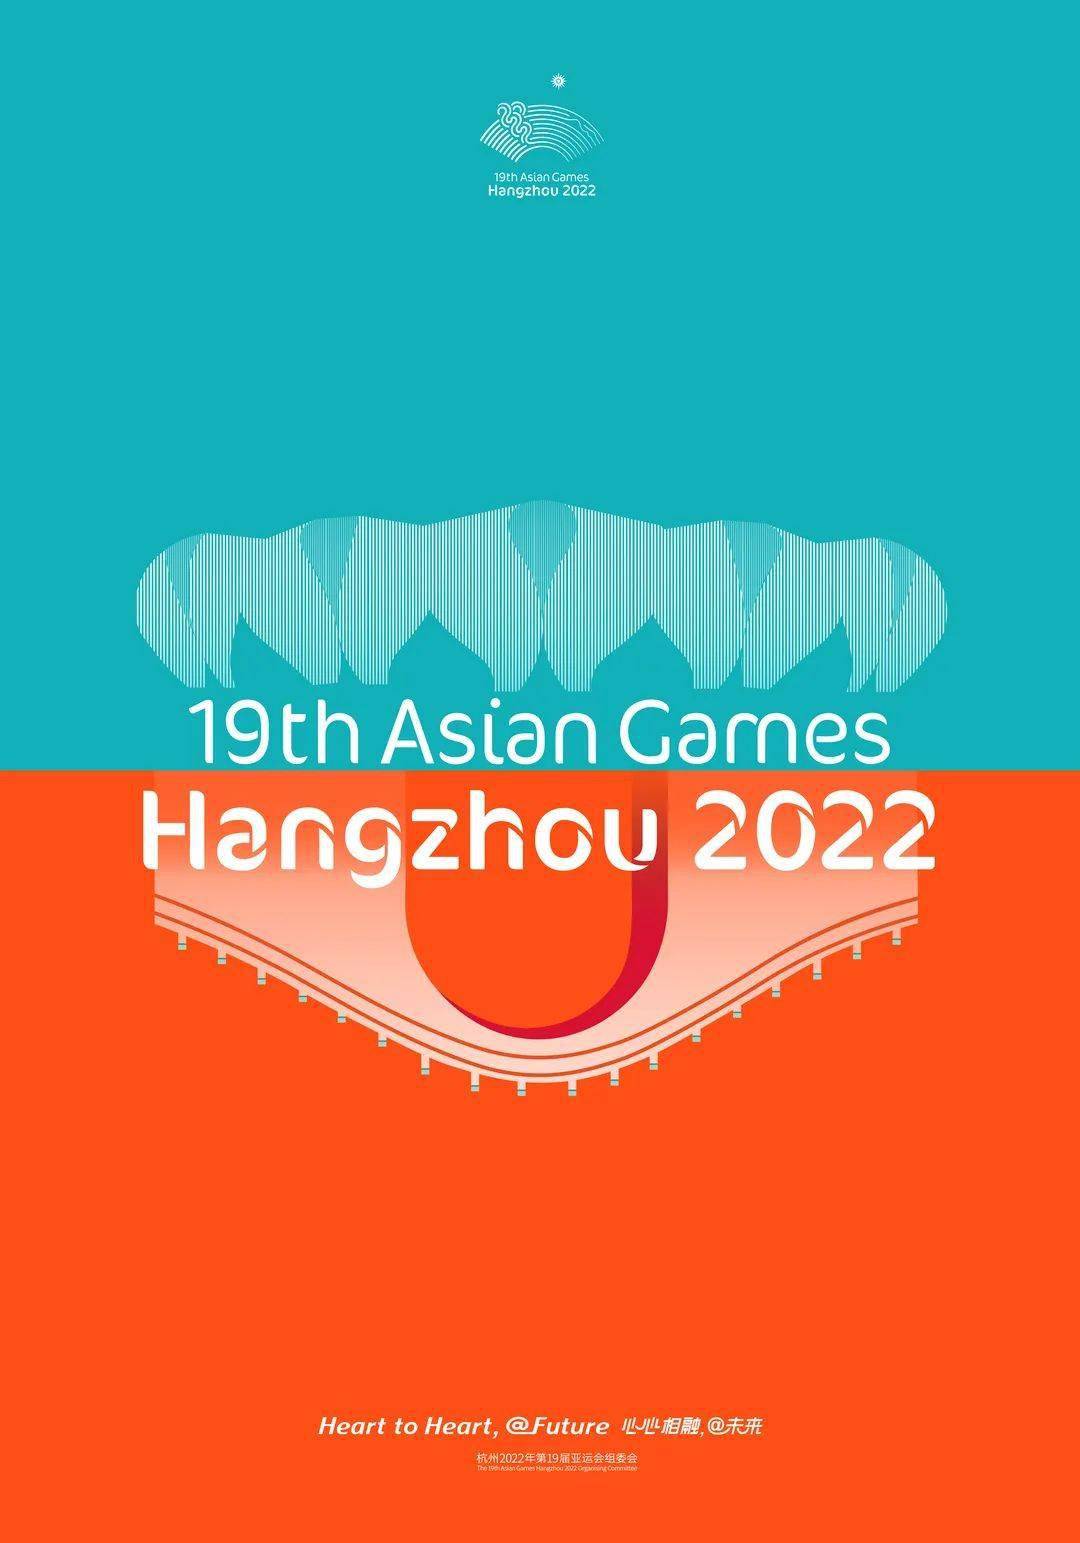 澳门威斯尼斯人8040app下载:第19届亚洲运动会将于2022年09月25日在浙江省举行

